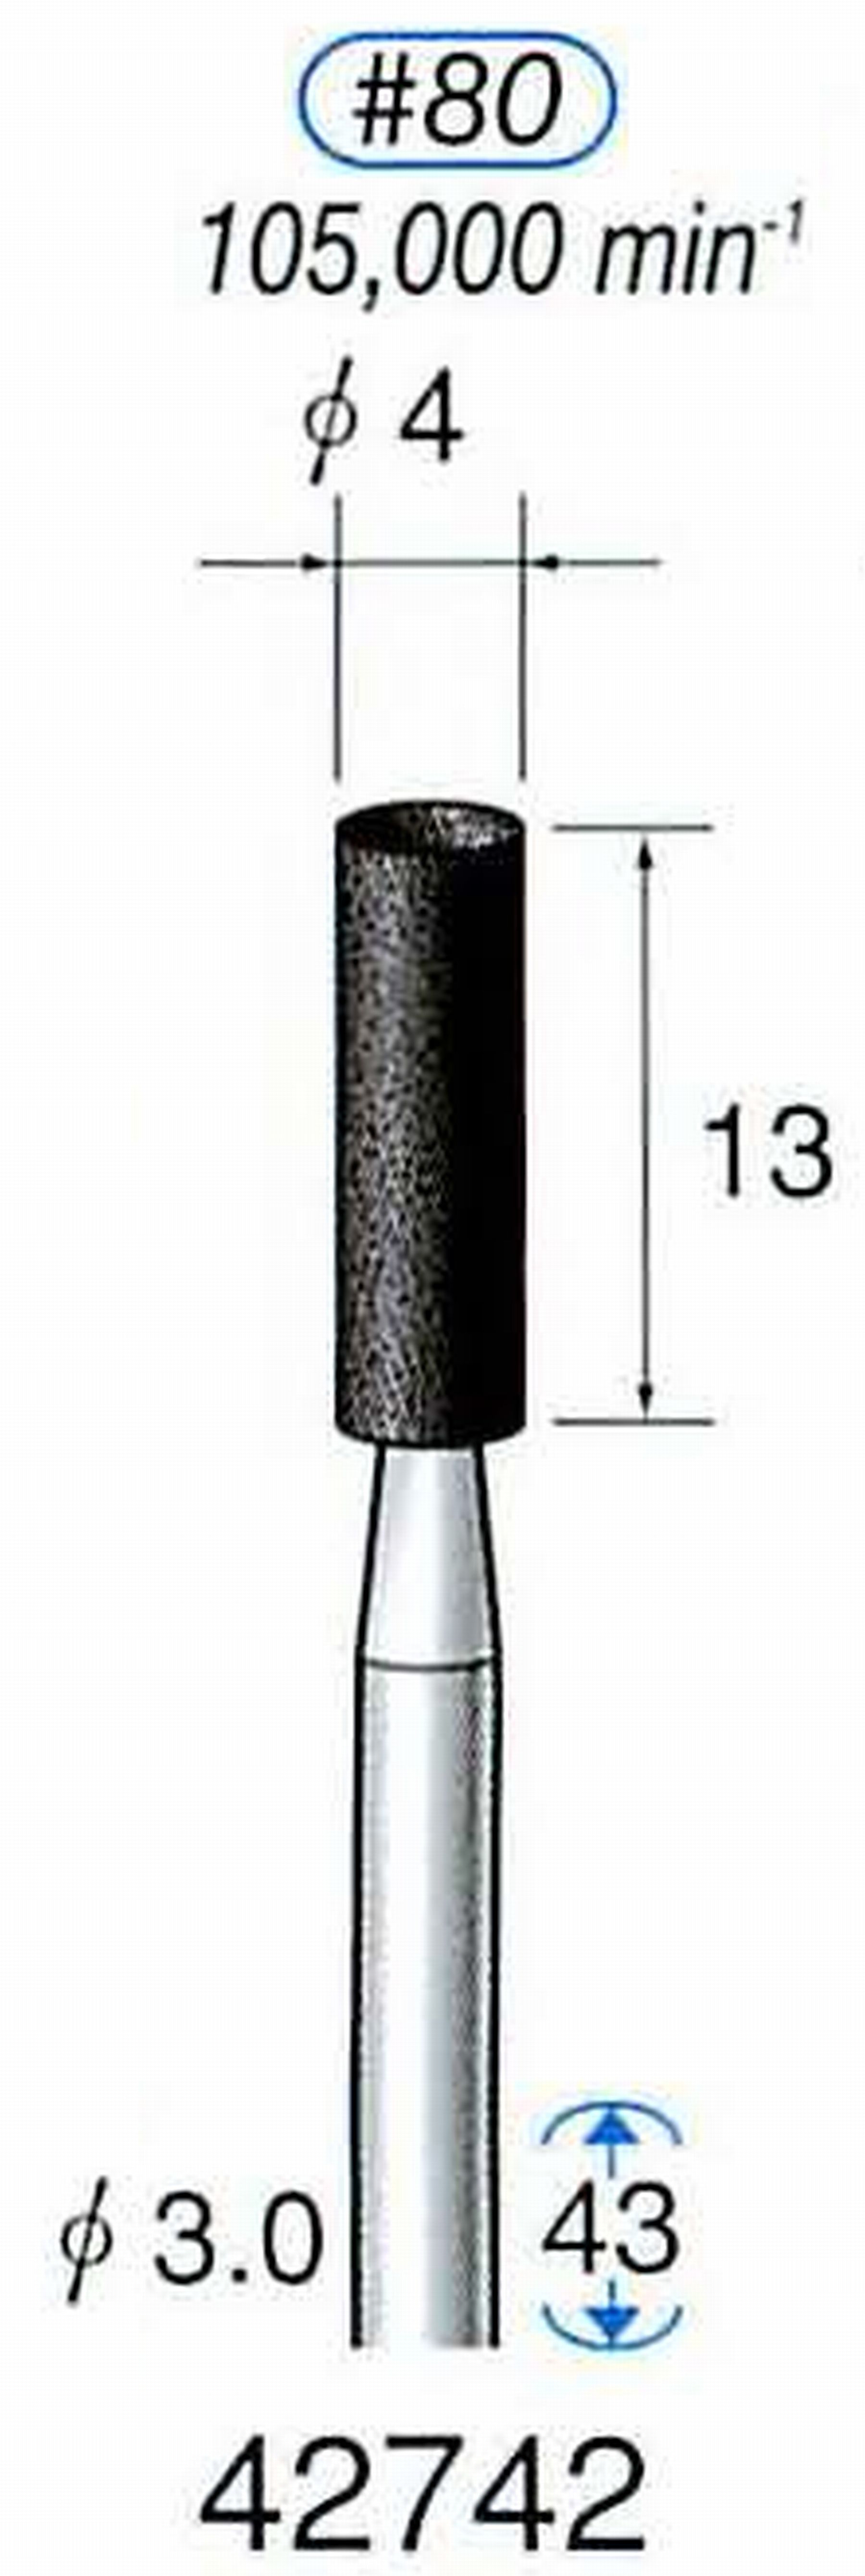 ナカニシ/NAKANISHI 軸付砥石(A砥粒) ブラック砥石 軸径(シャンク) φ3.0mm 42742